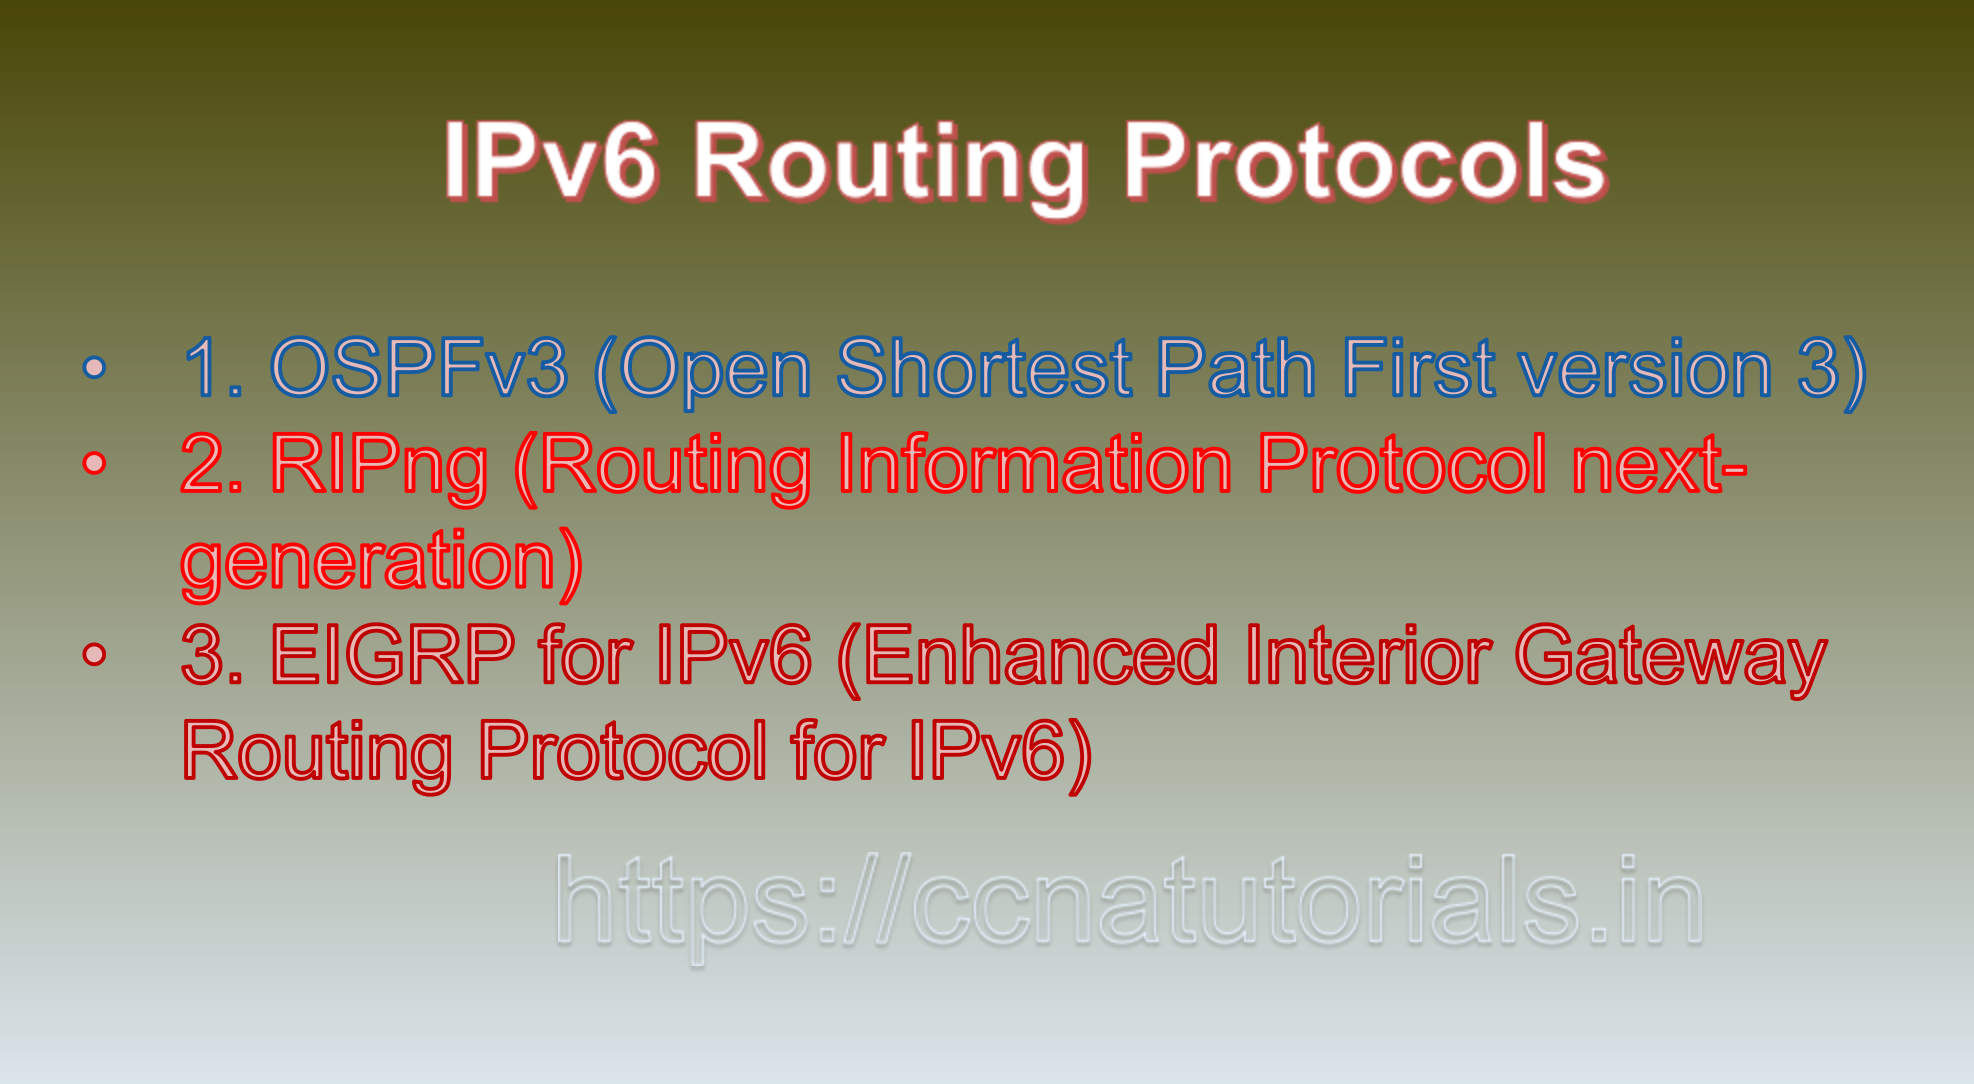 IPv6 Routing Protocols, ccna, ccna tutorials